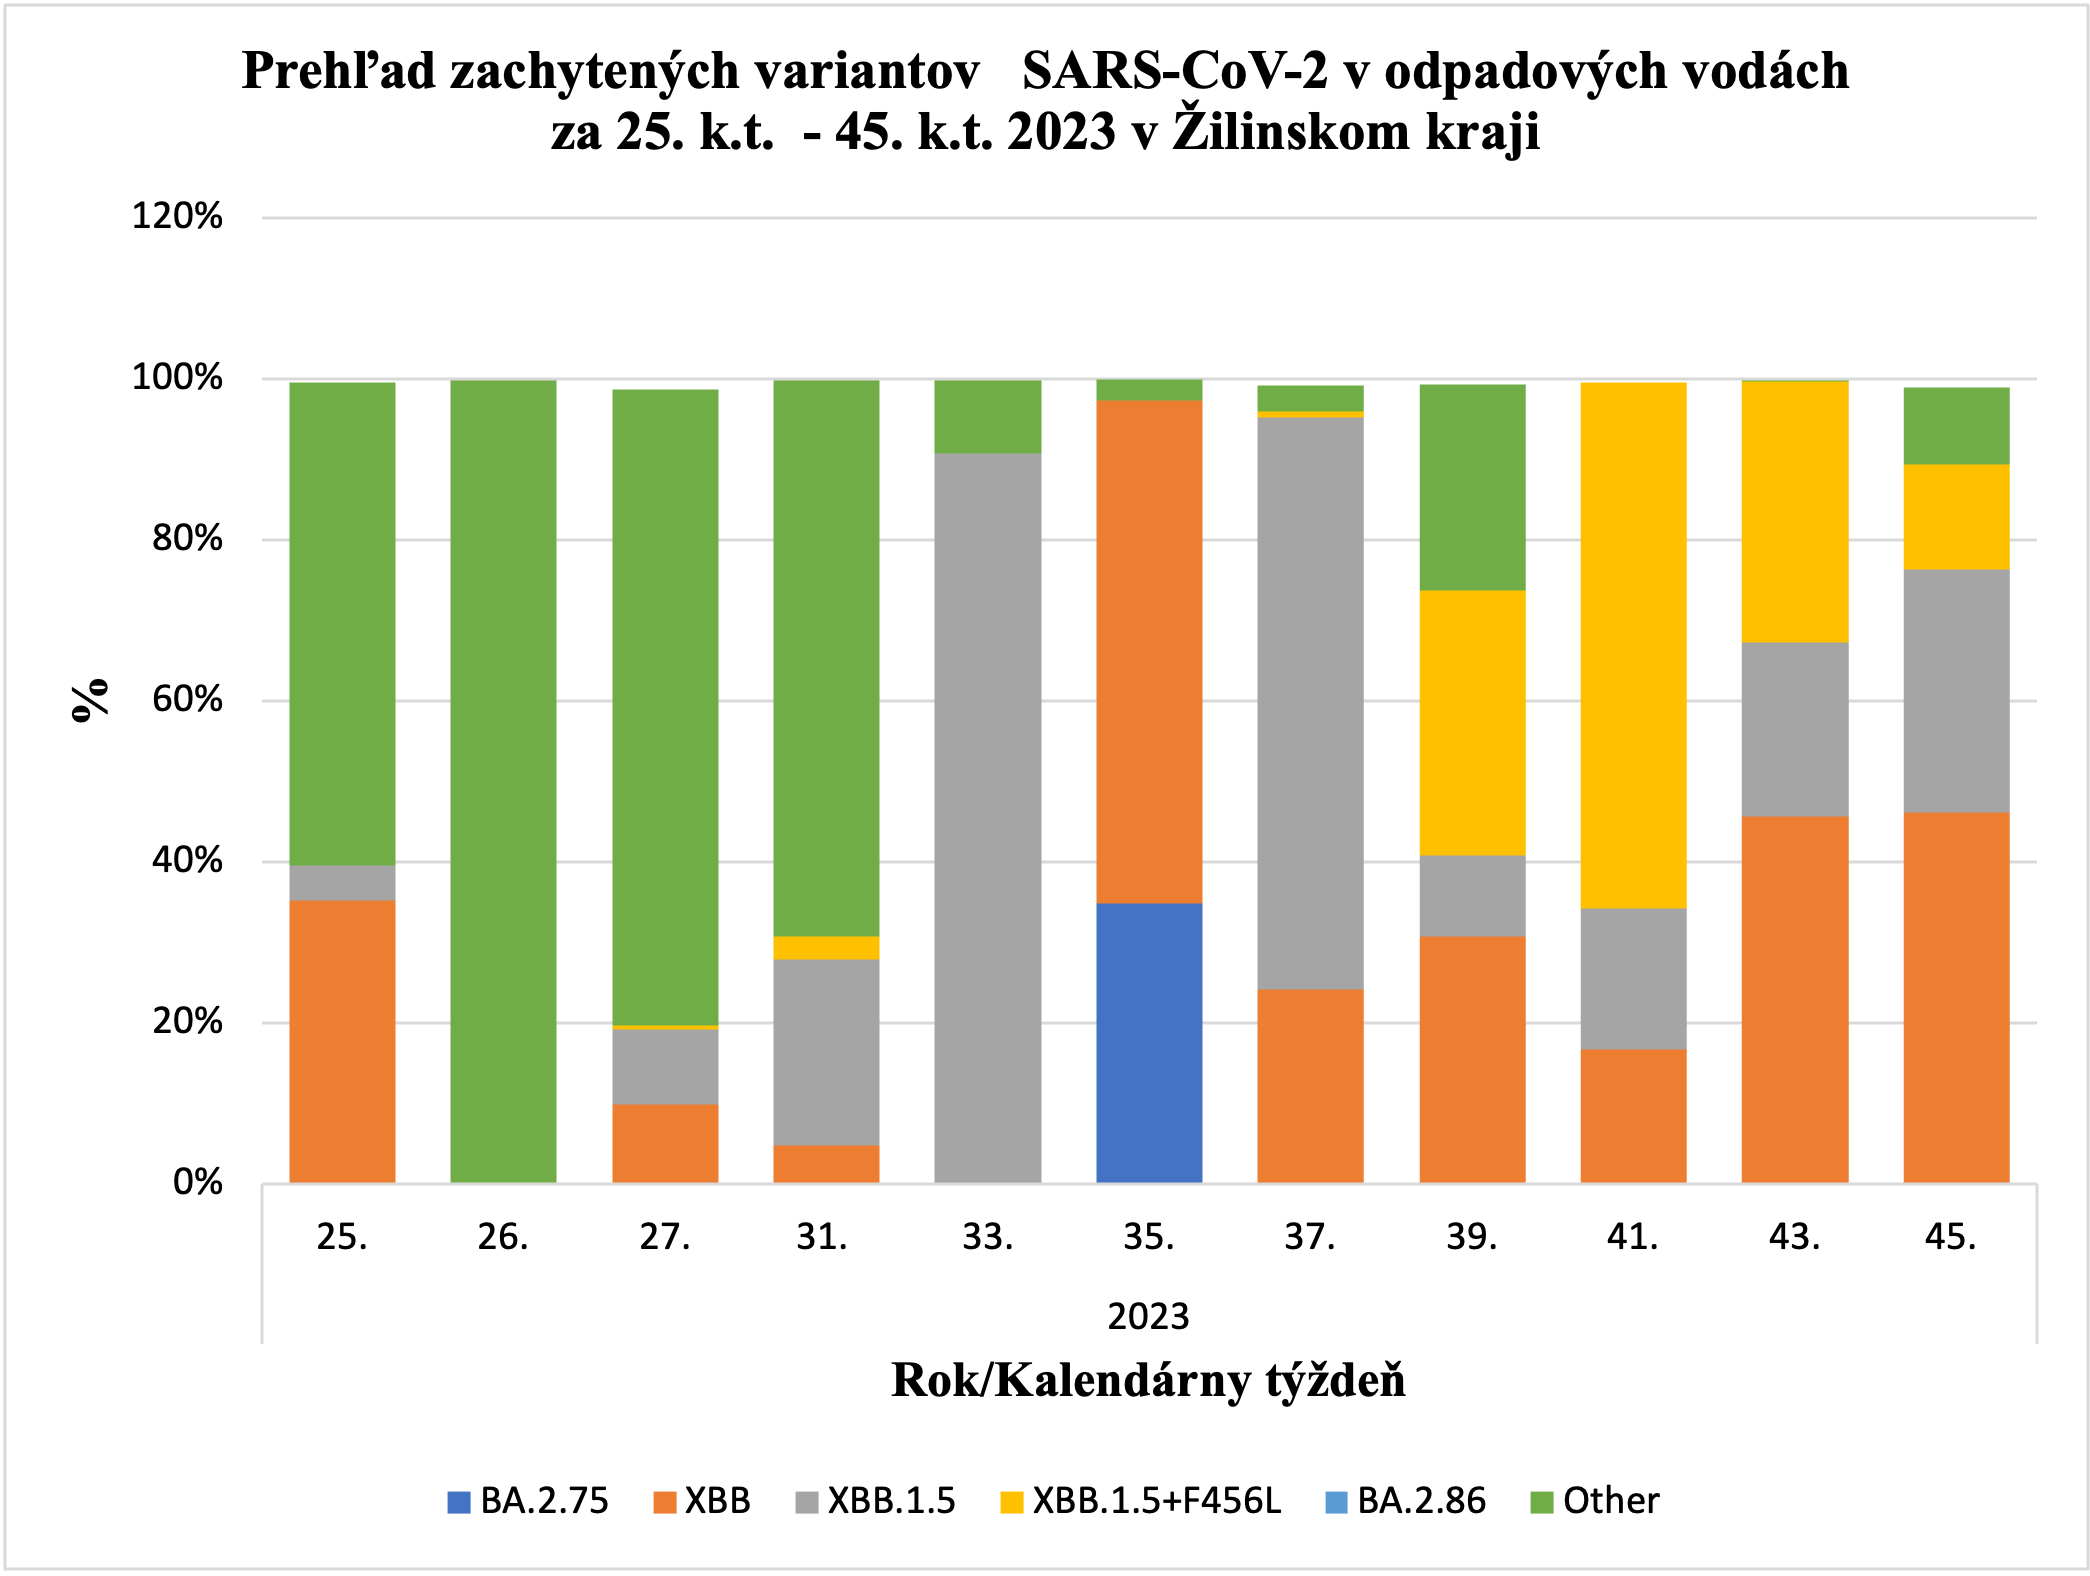 Prehľad zachytených variantov SARS-CoV-2 v Žiline